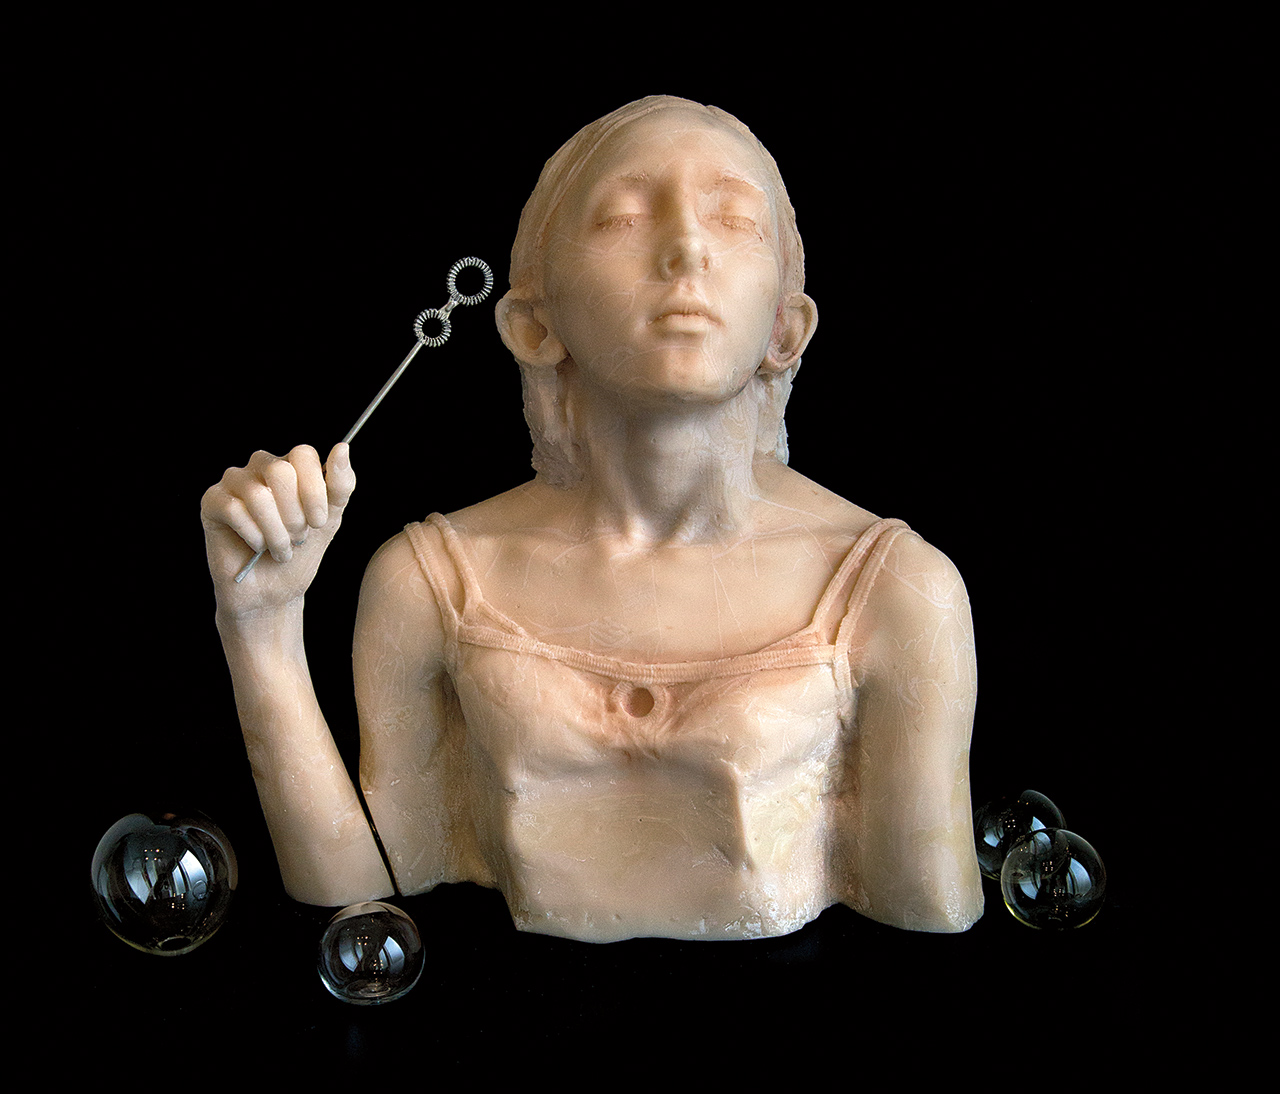 Dean Allison's work "Float" shows girl blowing bubbles